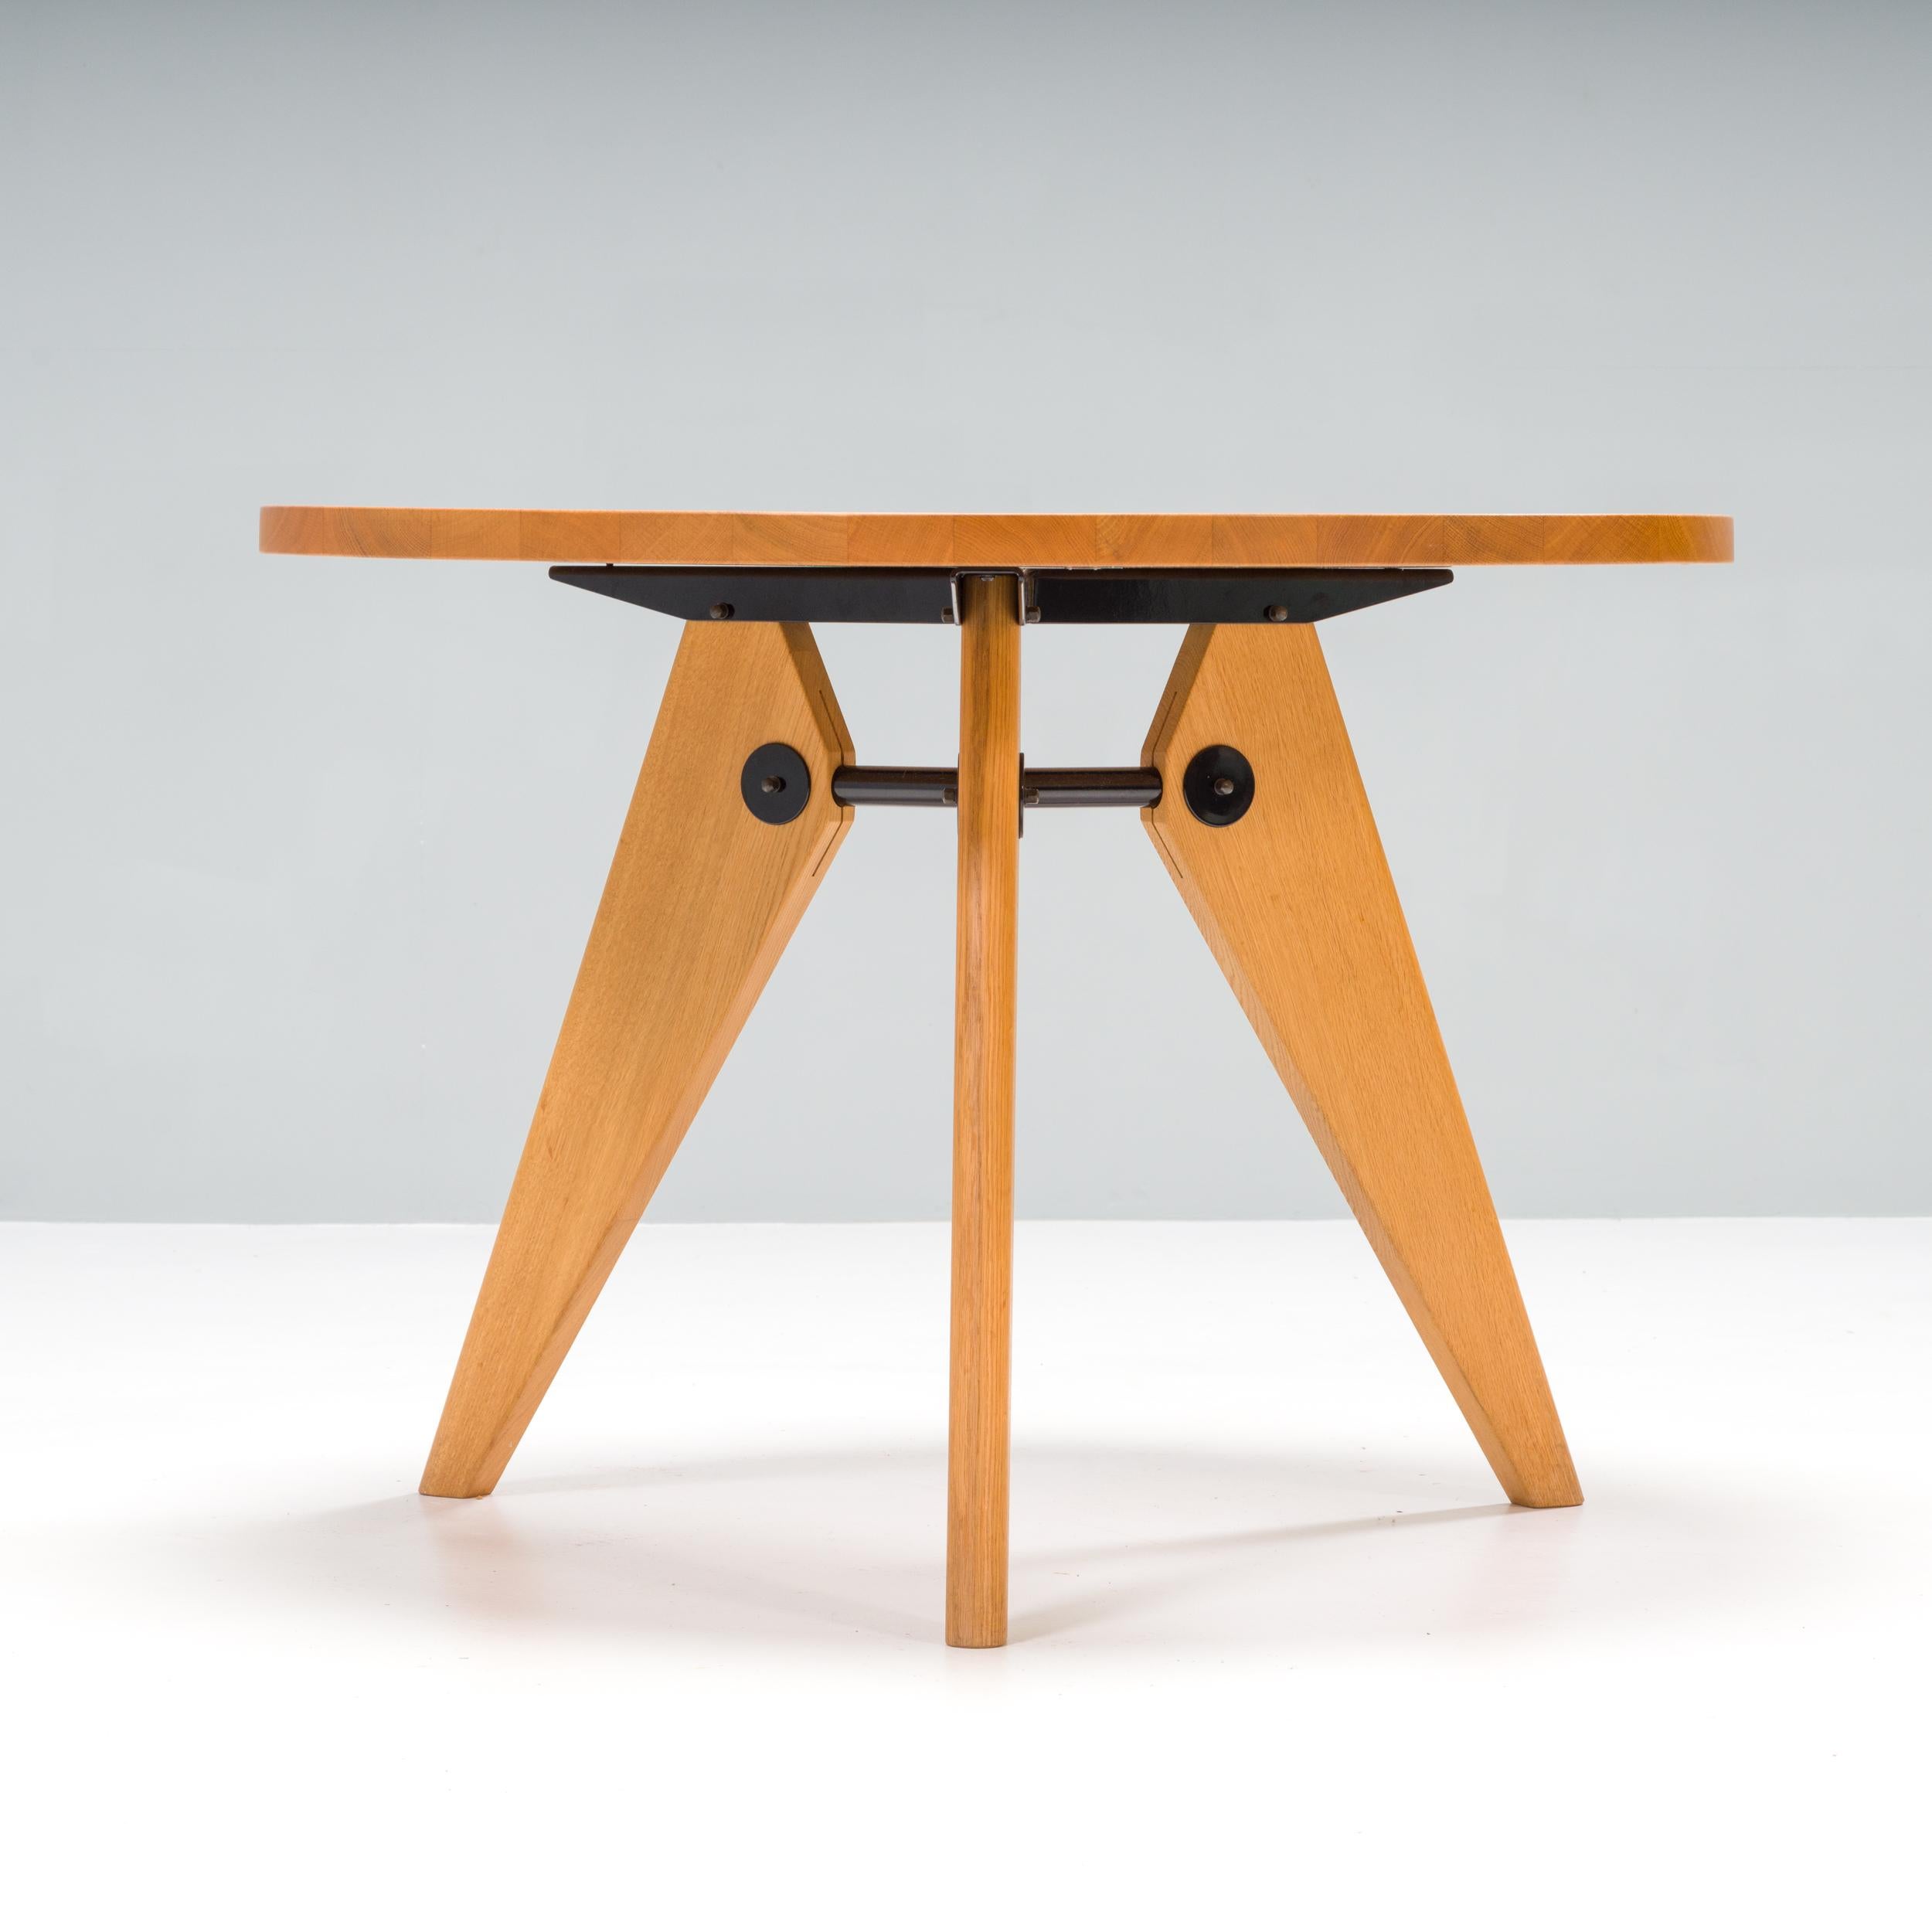 La table Guéridon a été conçue à l'origine pour l'Université de Paris par le célèbre designer de meubles et ingénieur Jean Prouvé en 1949.

Fabriquée par Vitra, la table de salle à manger ronde est fabriquée en chêne naturel massif avec une finition